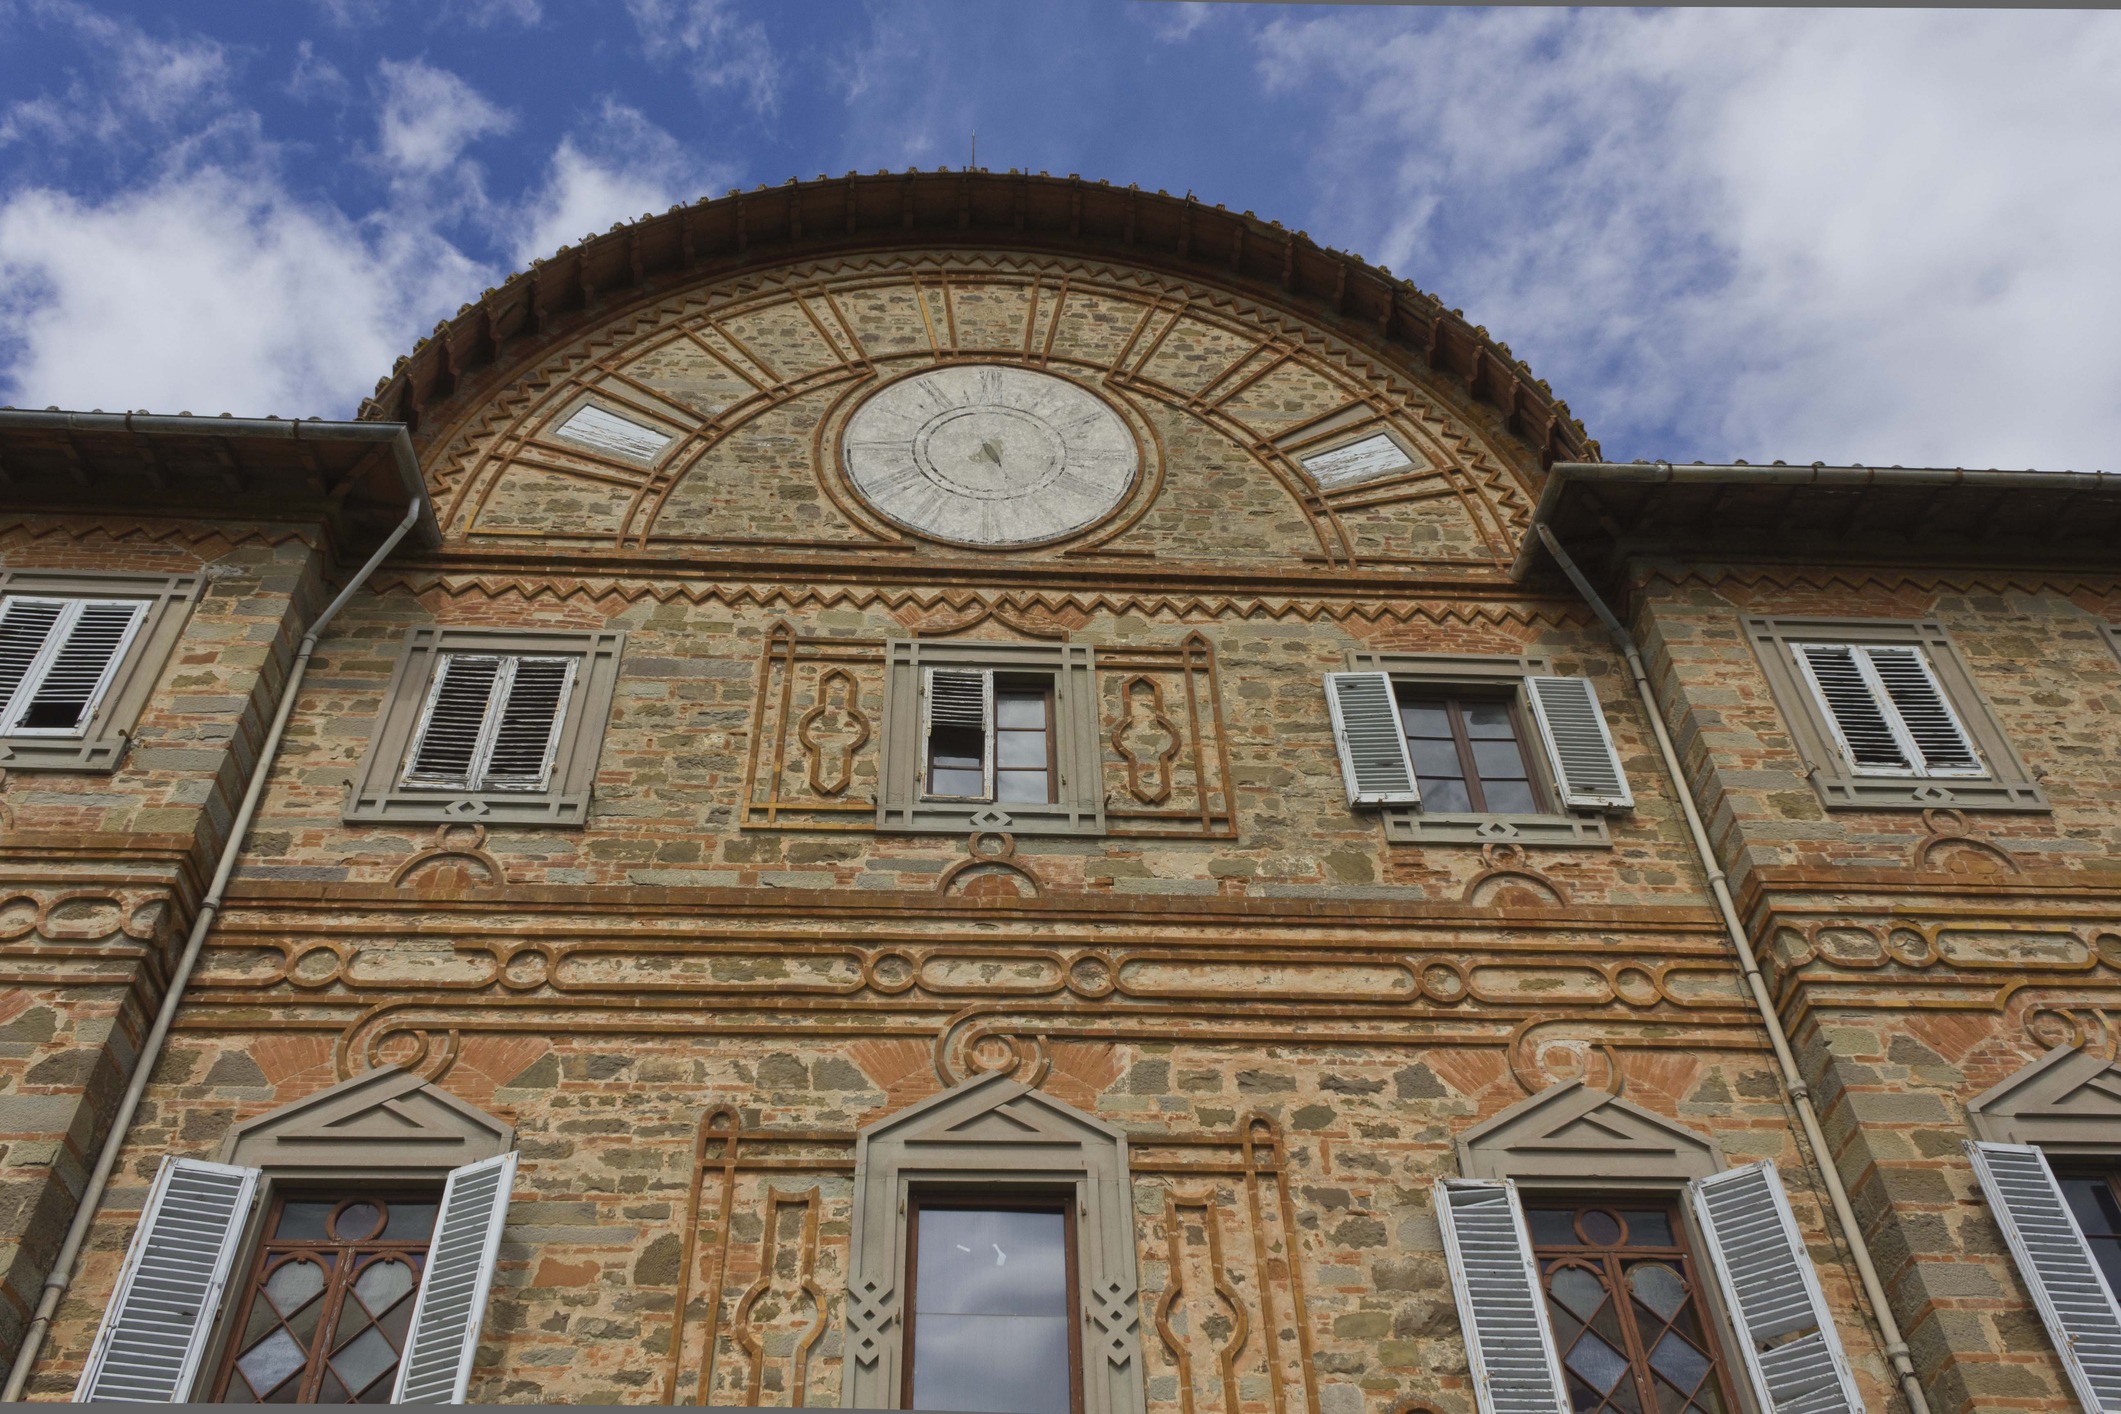 façade of the ancient Castello di Sammezzano in Italy